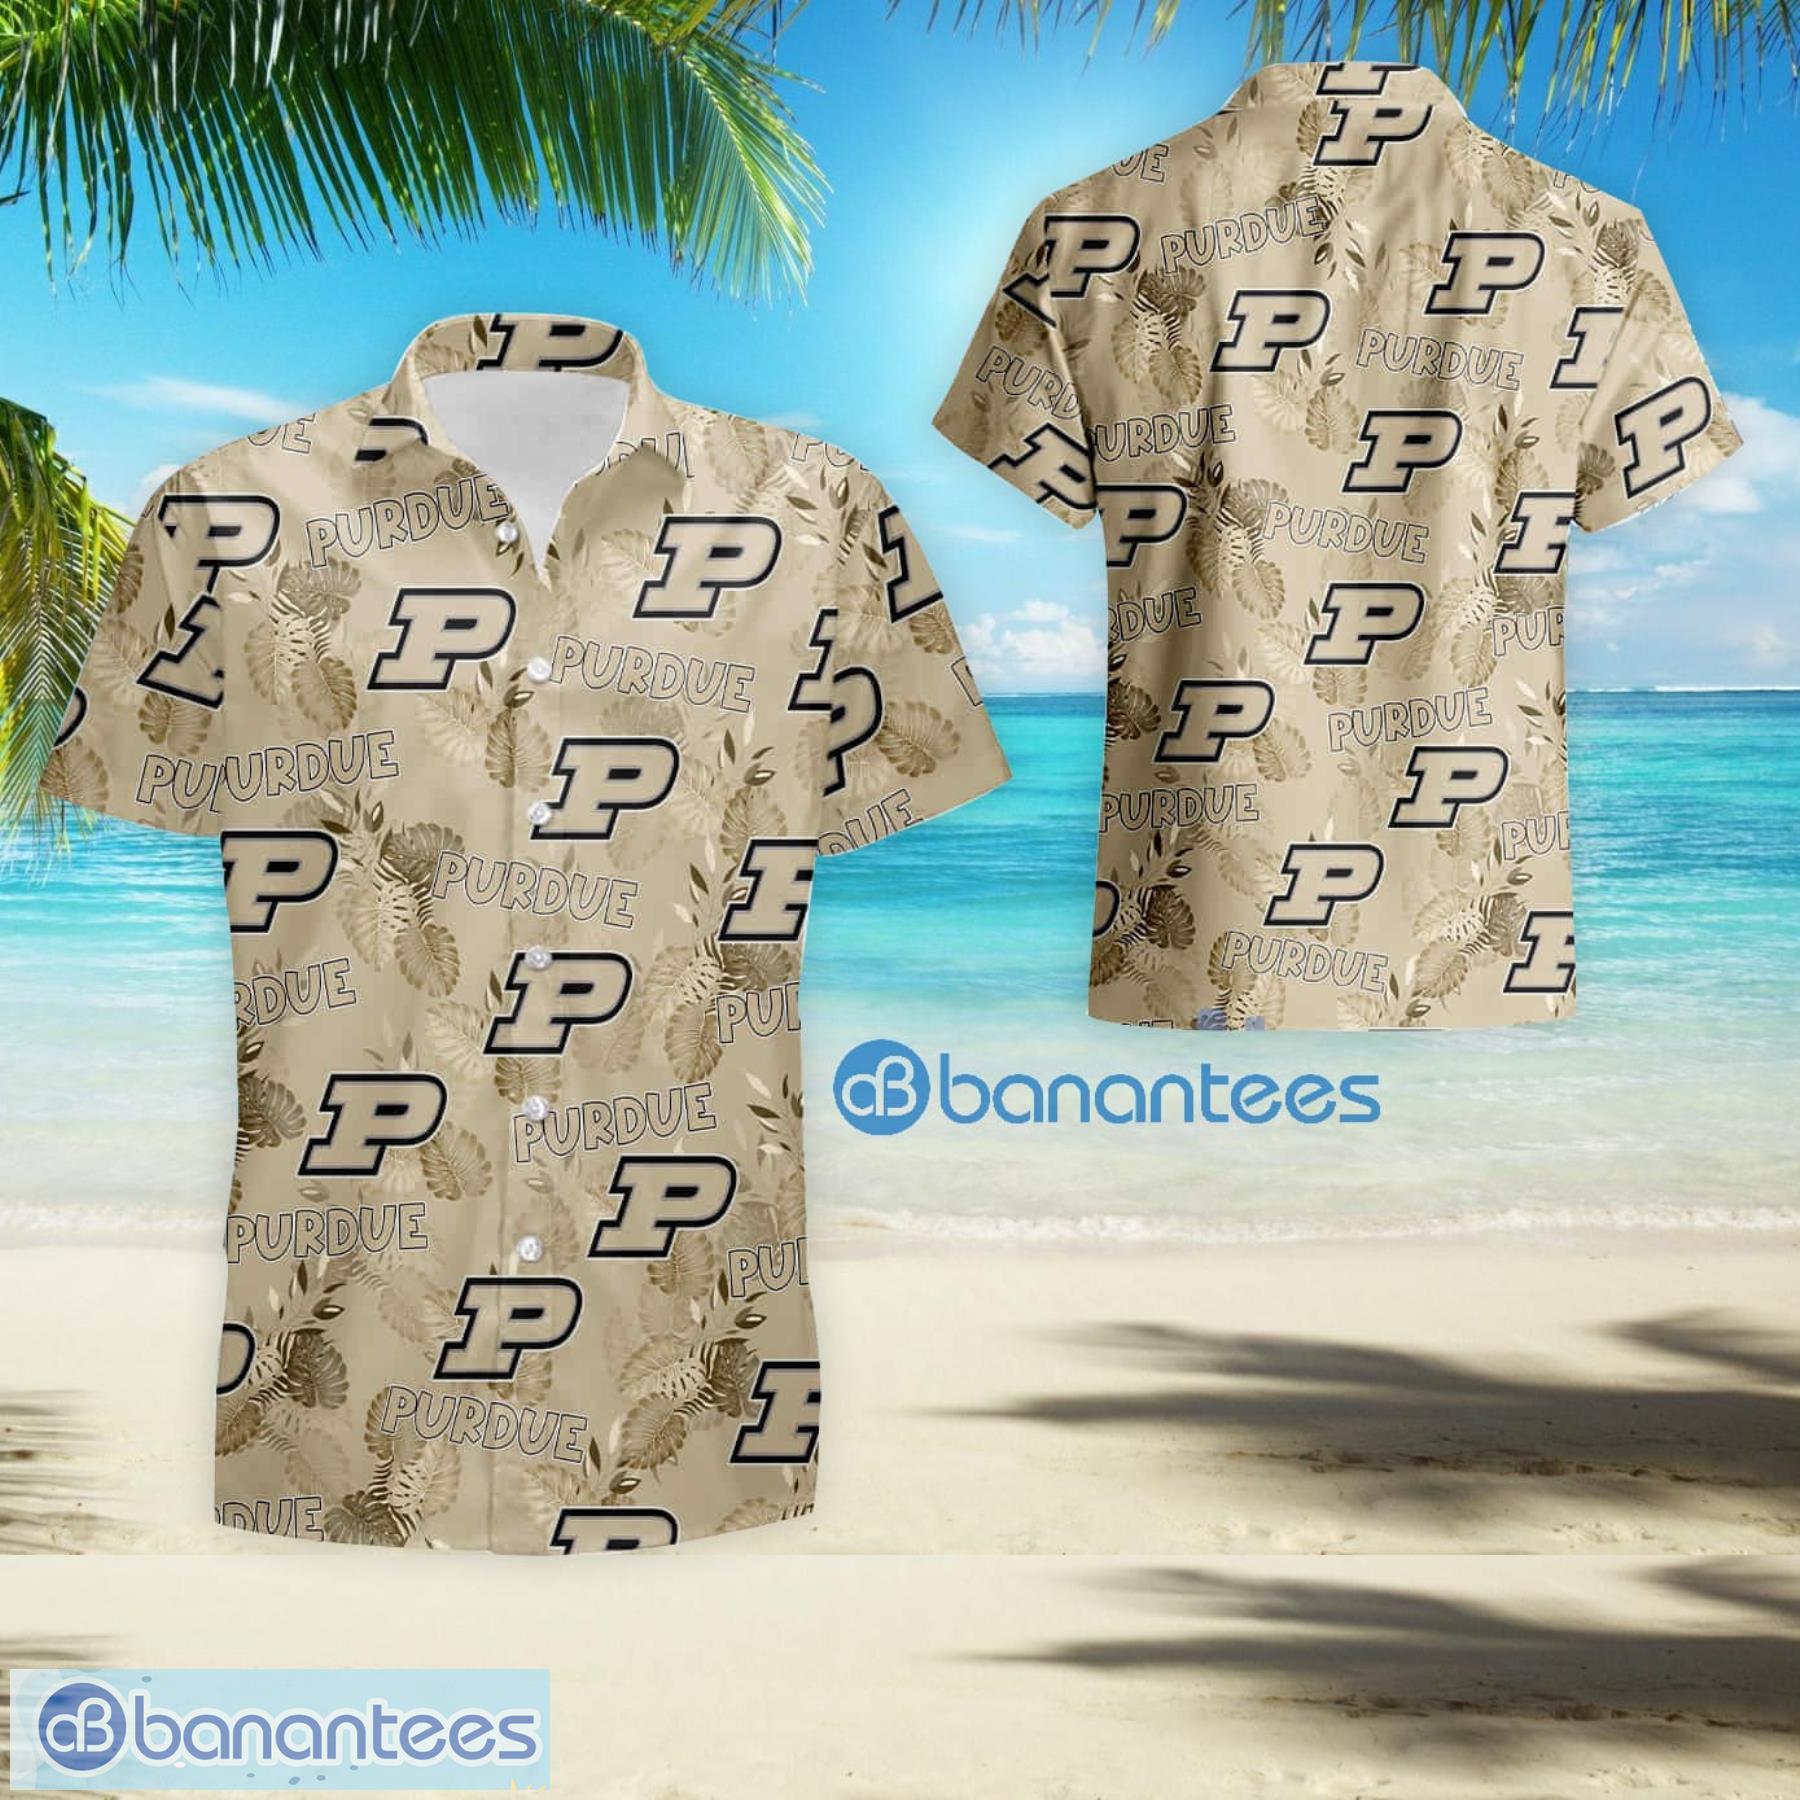 Pittsburgh Pirates MLB Mens Floral Hawaiian Shirt - Banantees